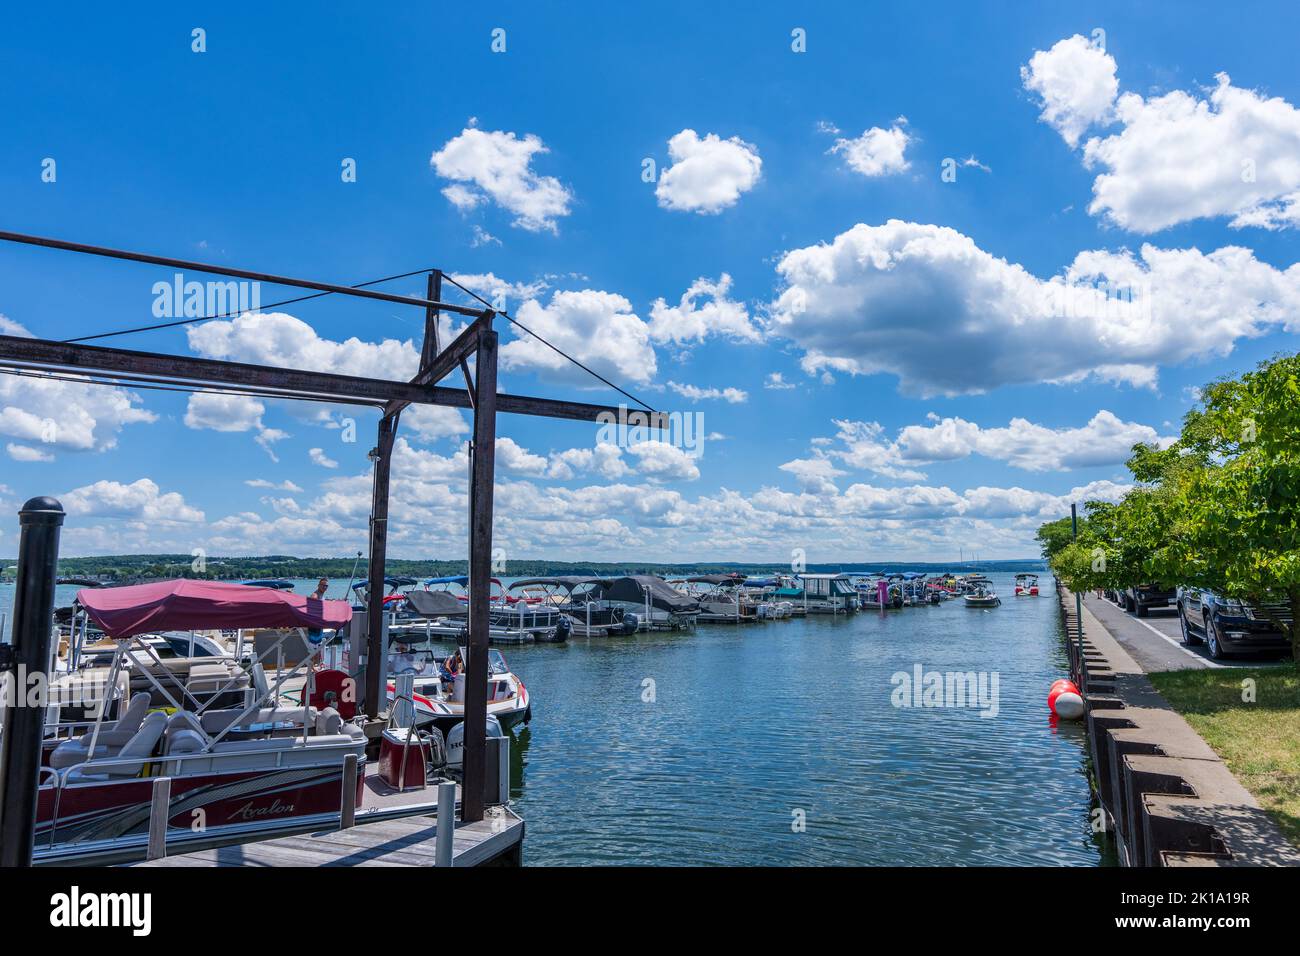 Canandaigua, NY - July 29, 2022: Part of the Canandaigua City Pier with many boats. Stock Photo